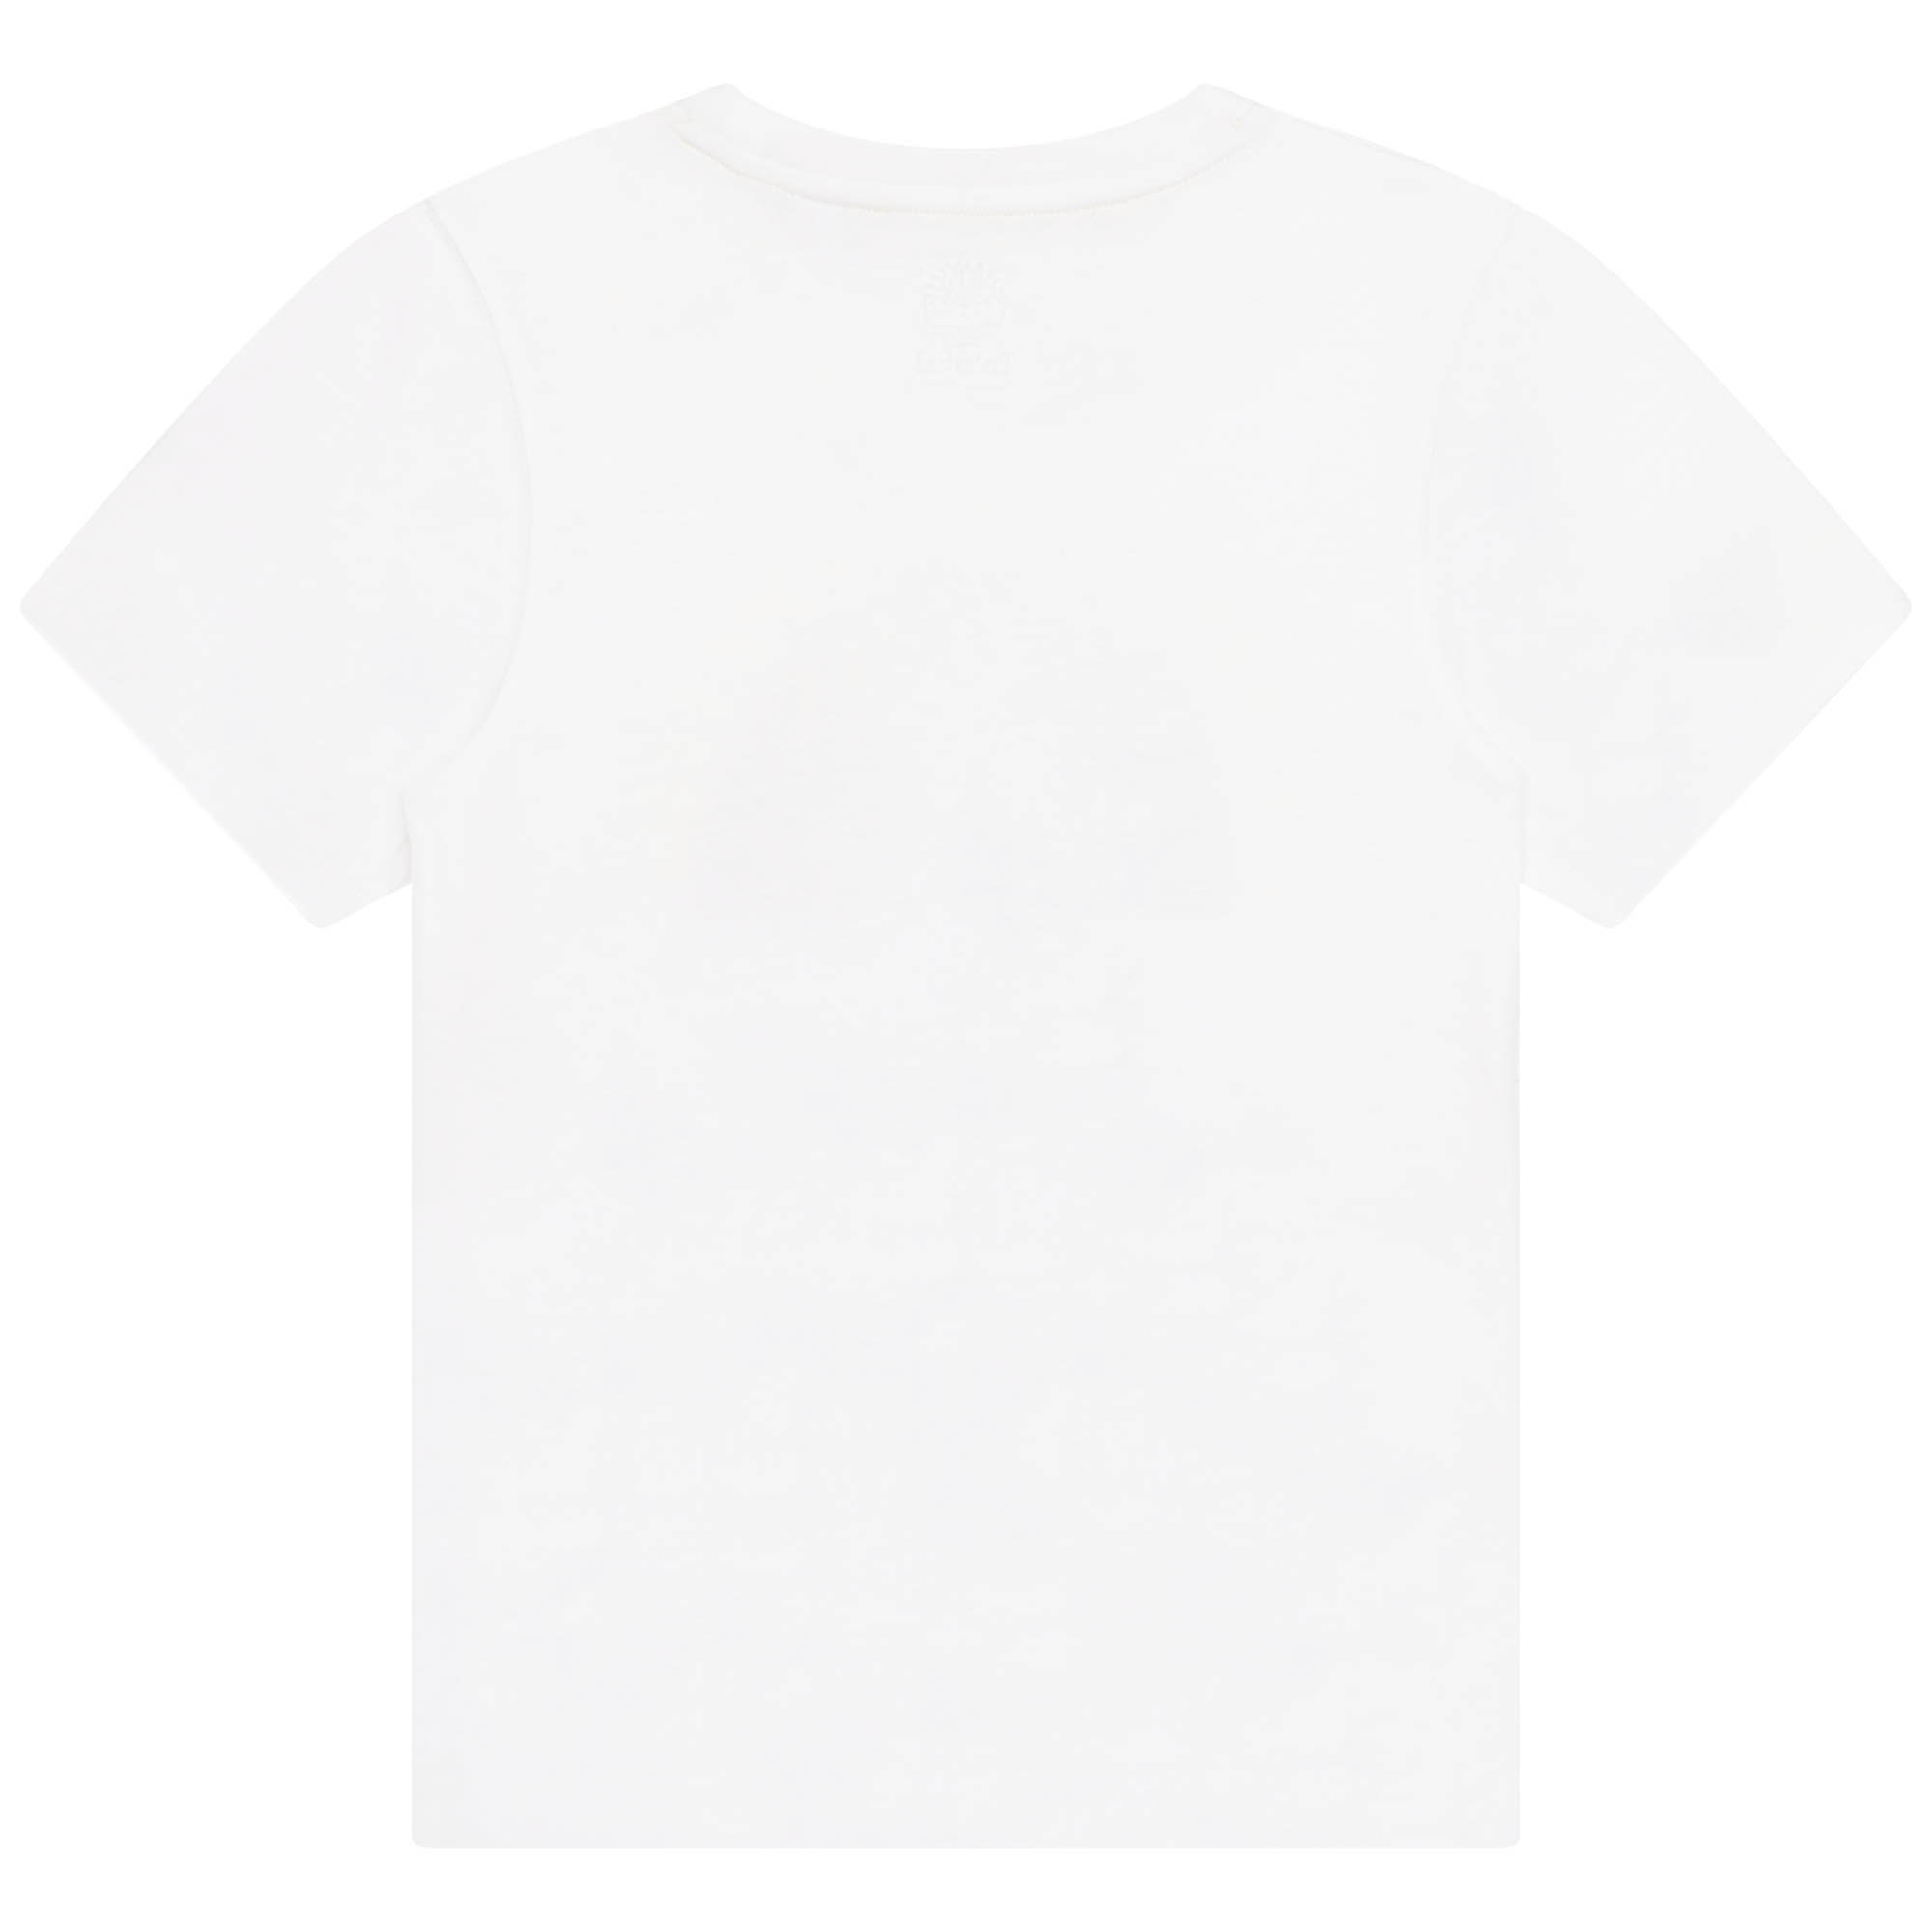 T-shirt stampa globo TIMBERLAND Per RAGAZZO